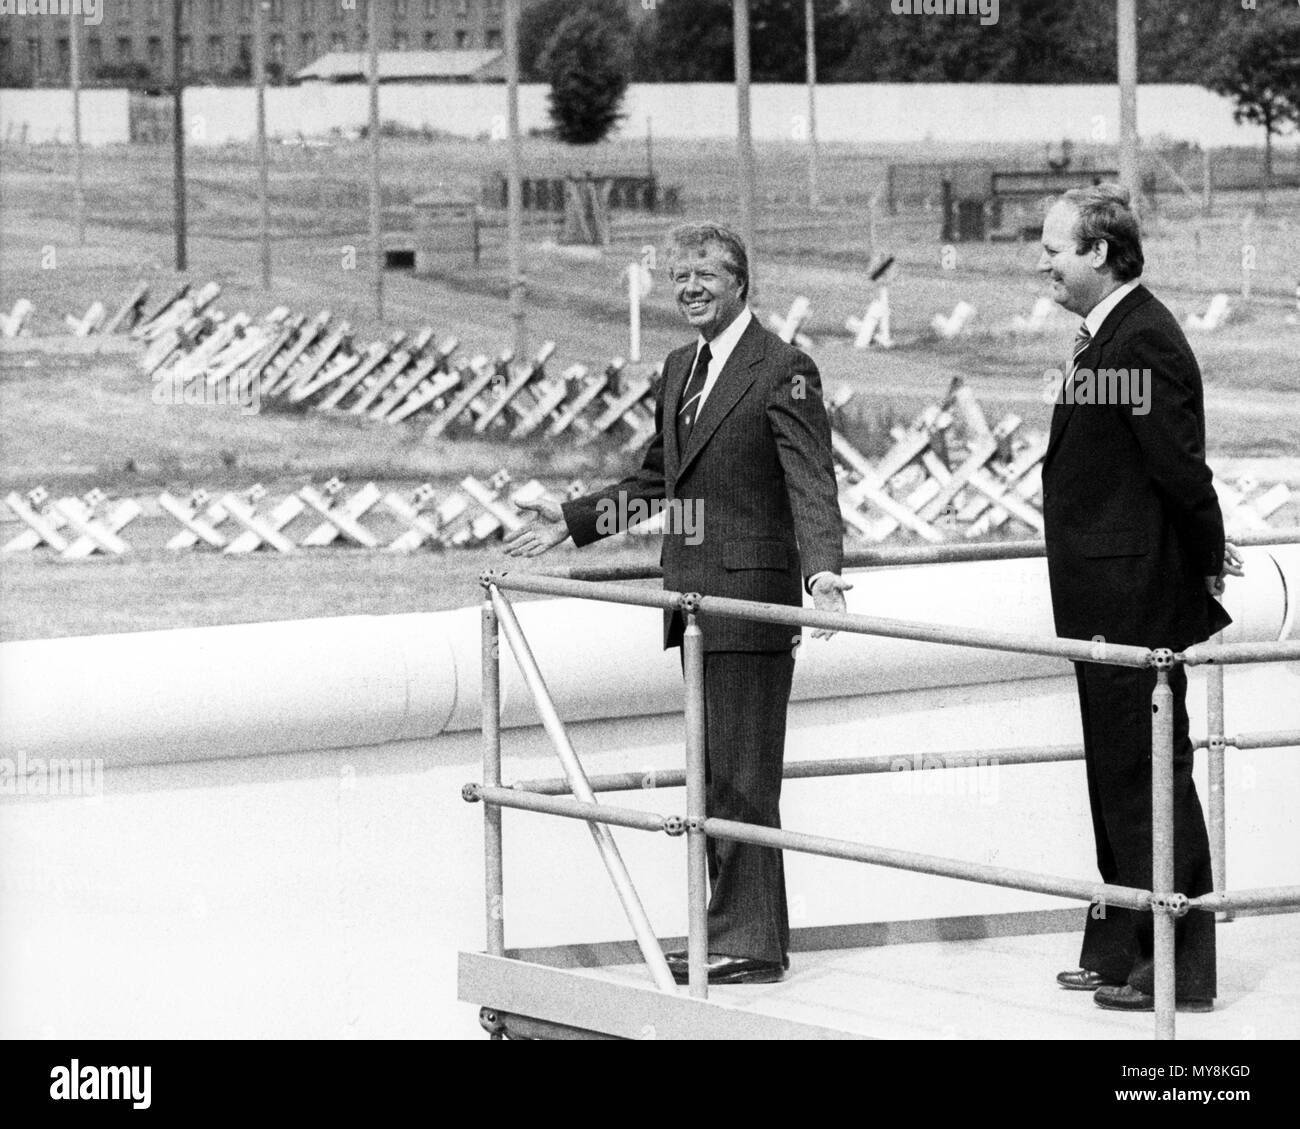 US-Präsident Jimmy Carter (L) und Bürgermeister von West Berlin Dietrich Stobbe (R) Anzeigen der Berliner Mauer am Potsdamer Platz in Berlin, FRG, 15. Juli 1978. | Verwendung weltweit Stockfoto